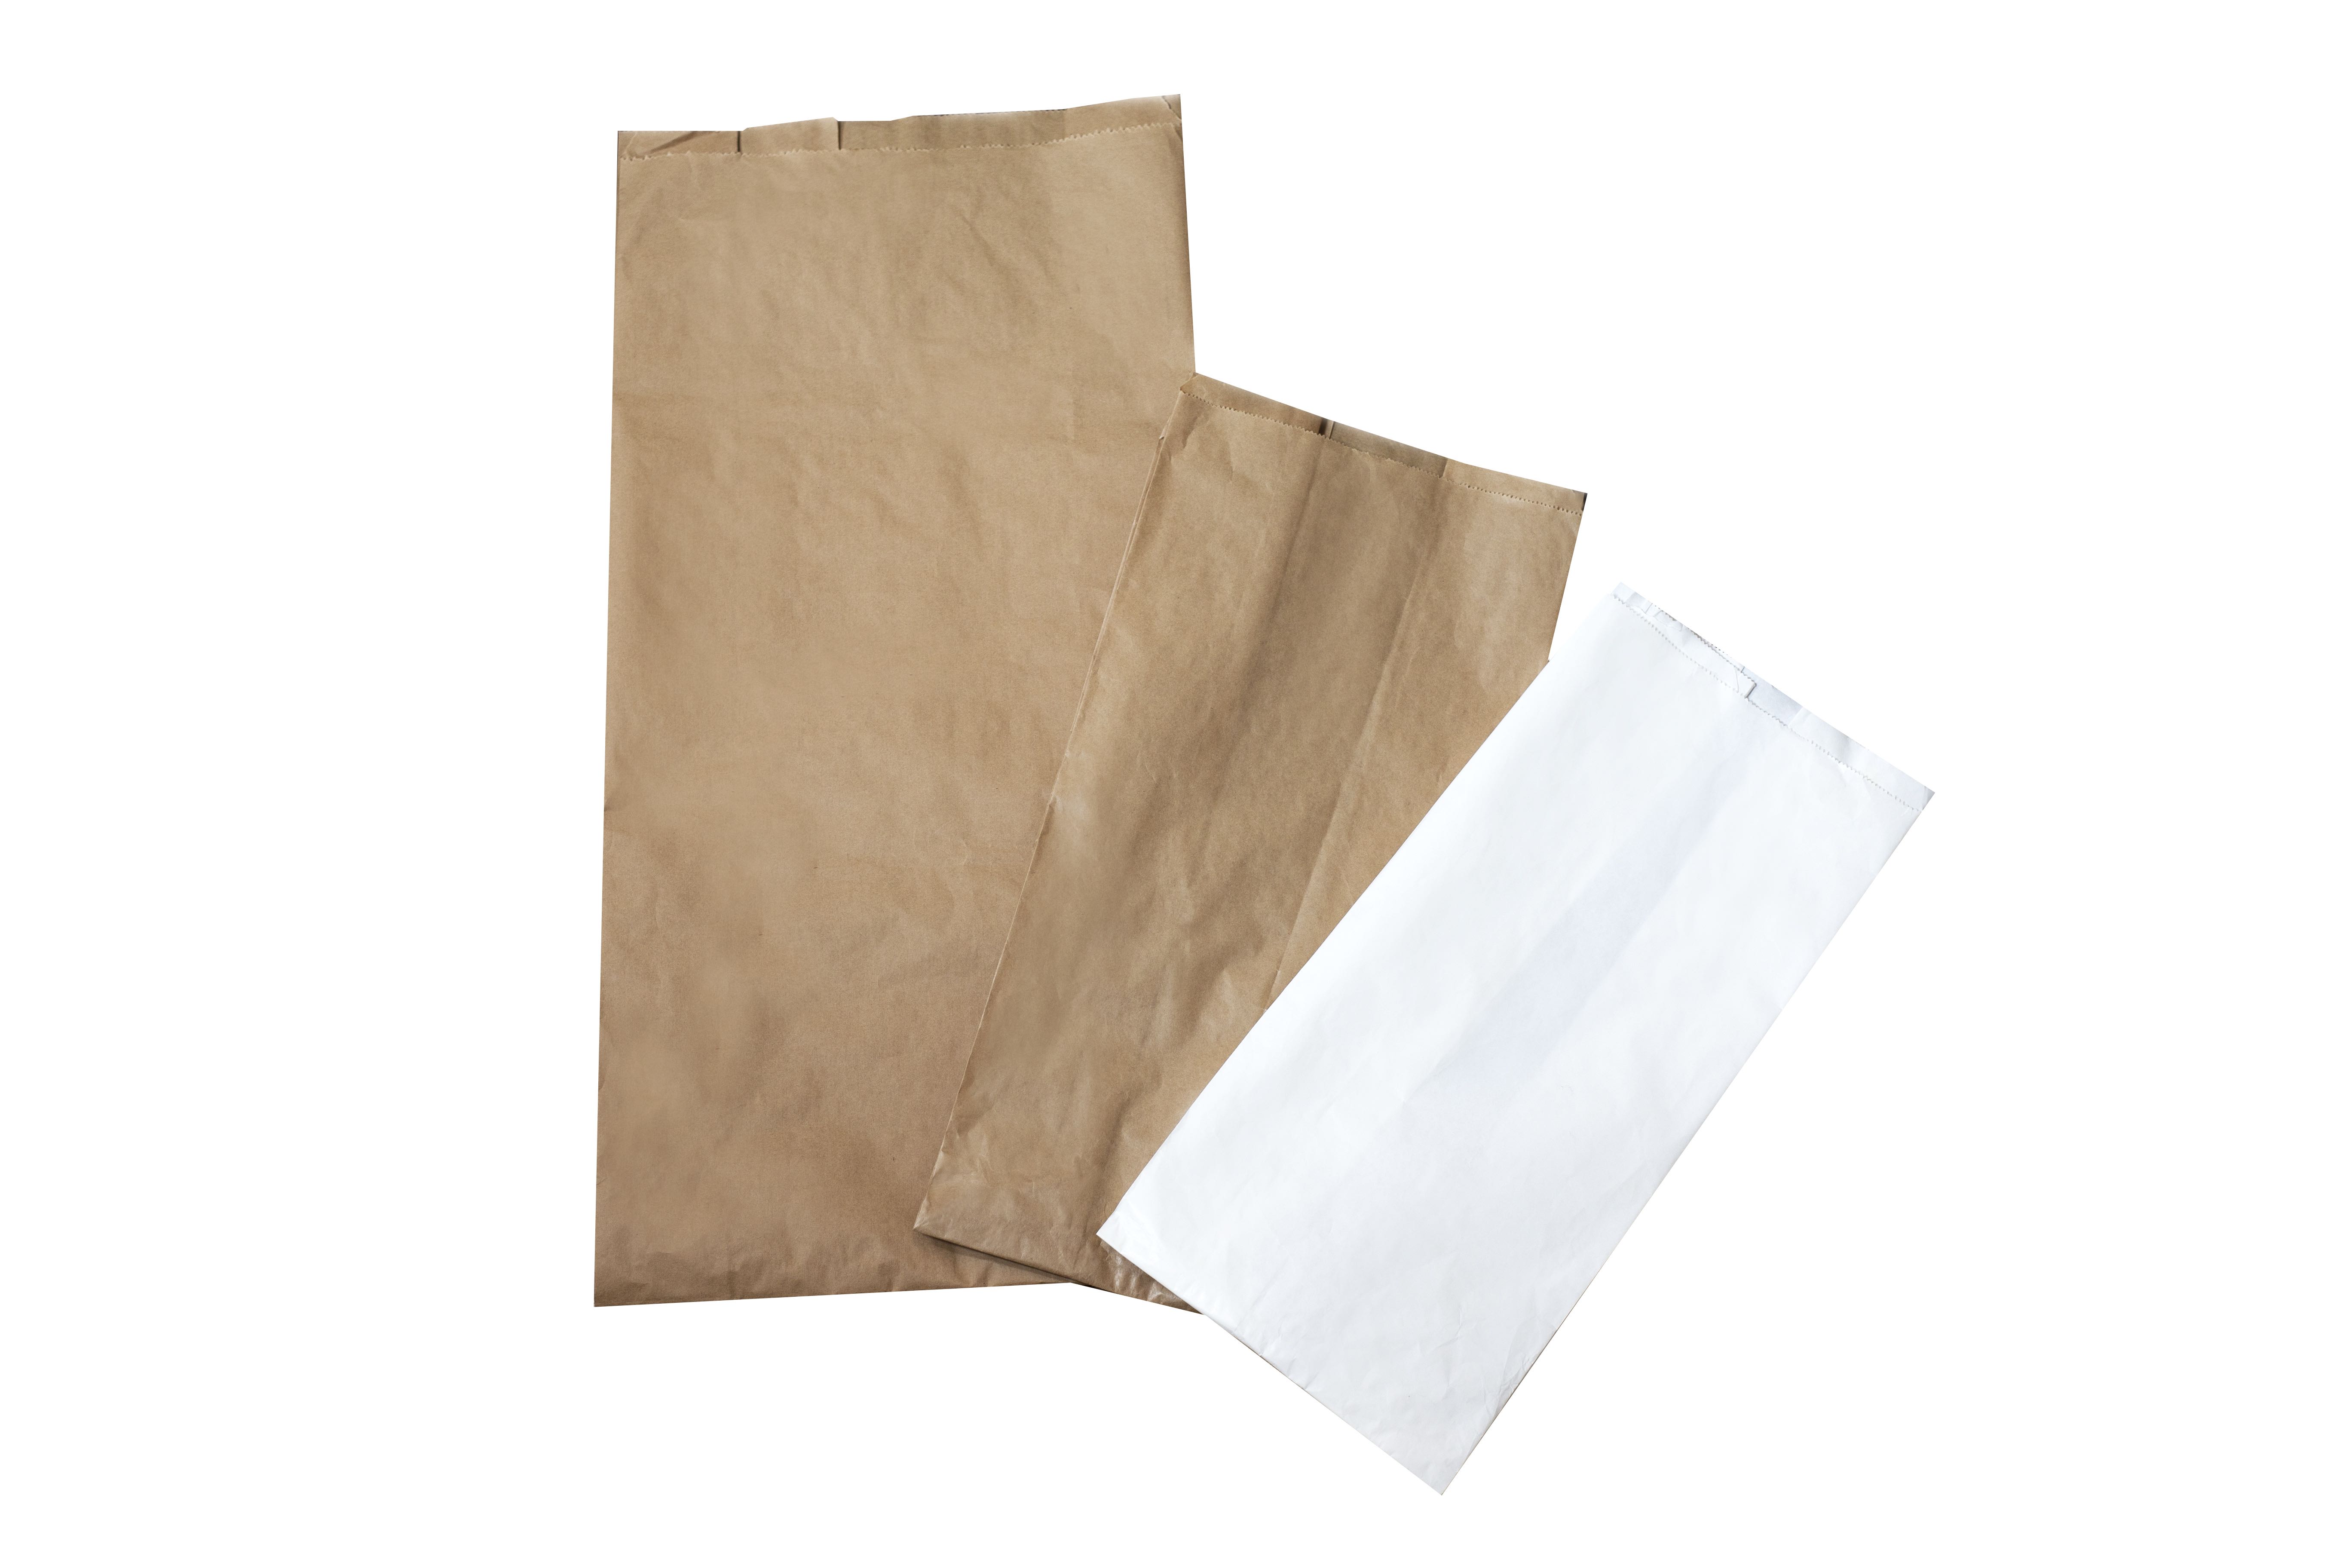 SACCHETTI FORMATI GRANDI - Sacchetti in carta - Vendita all'ingrosso di sacchetti  carta per alimenti, vassoi, contenitori per alimenti